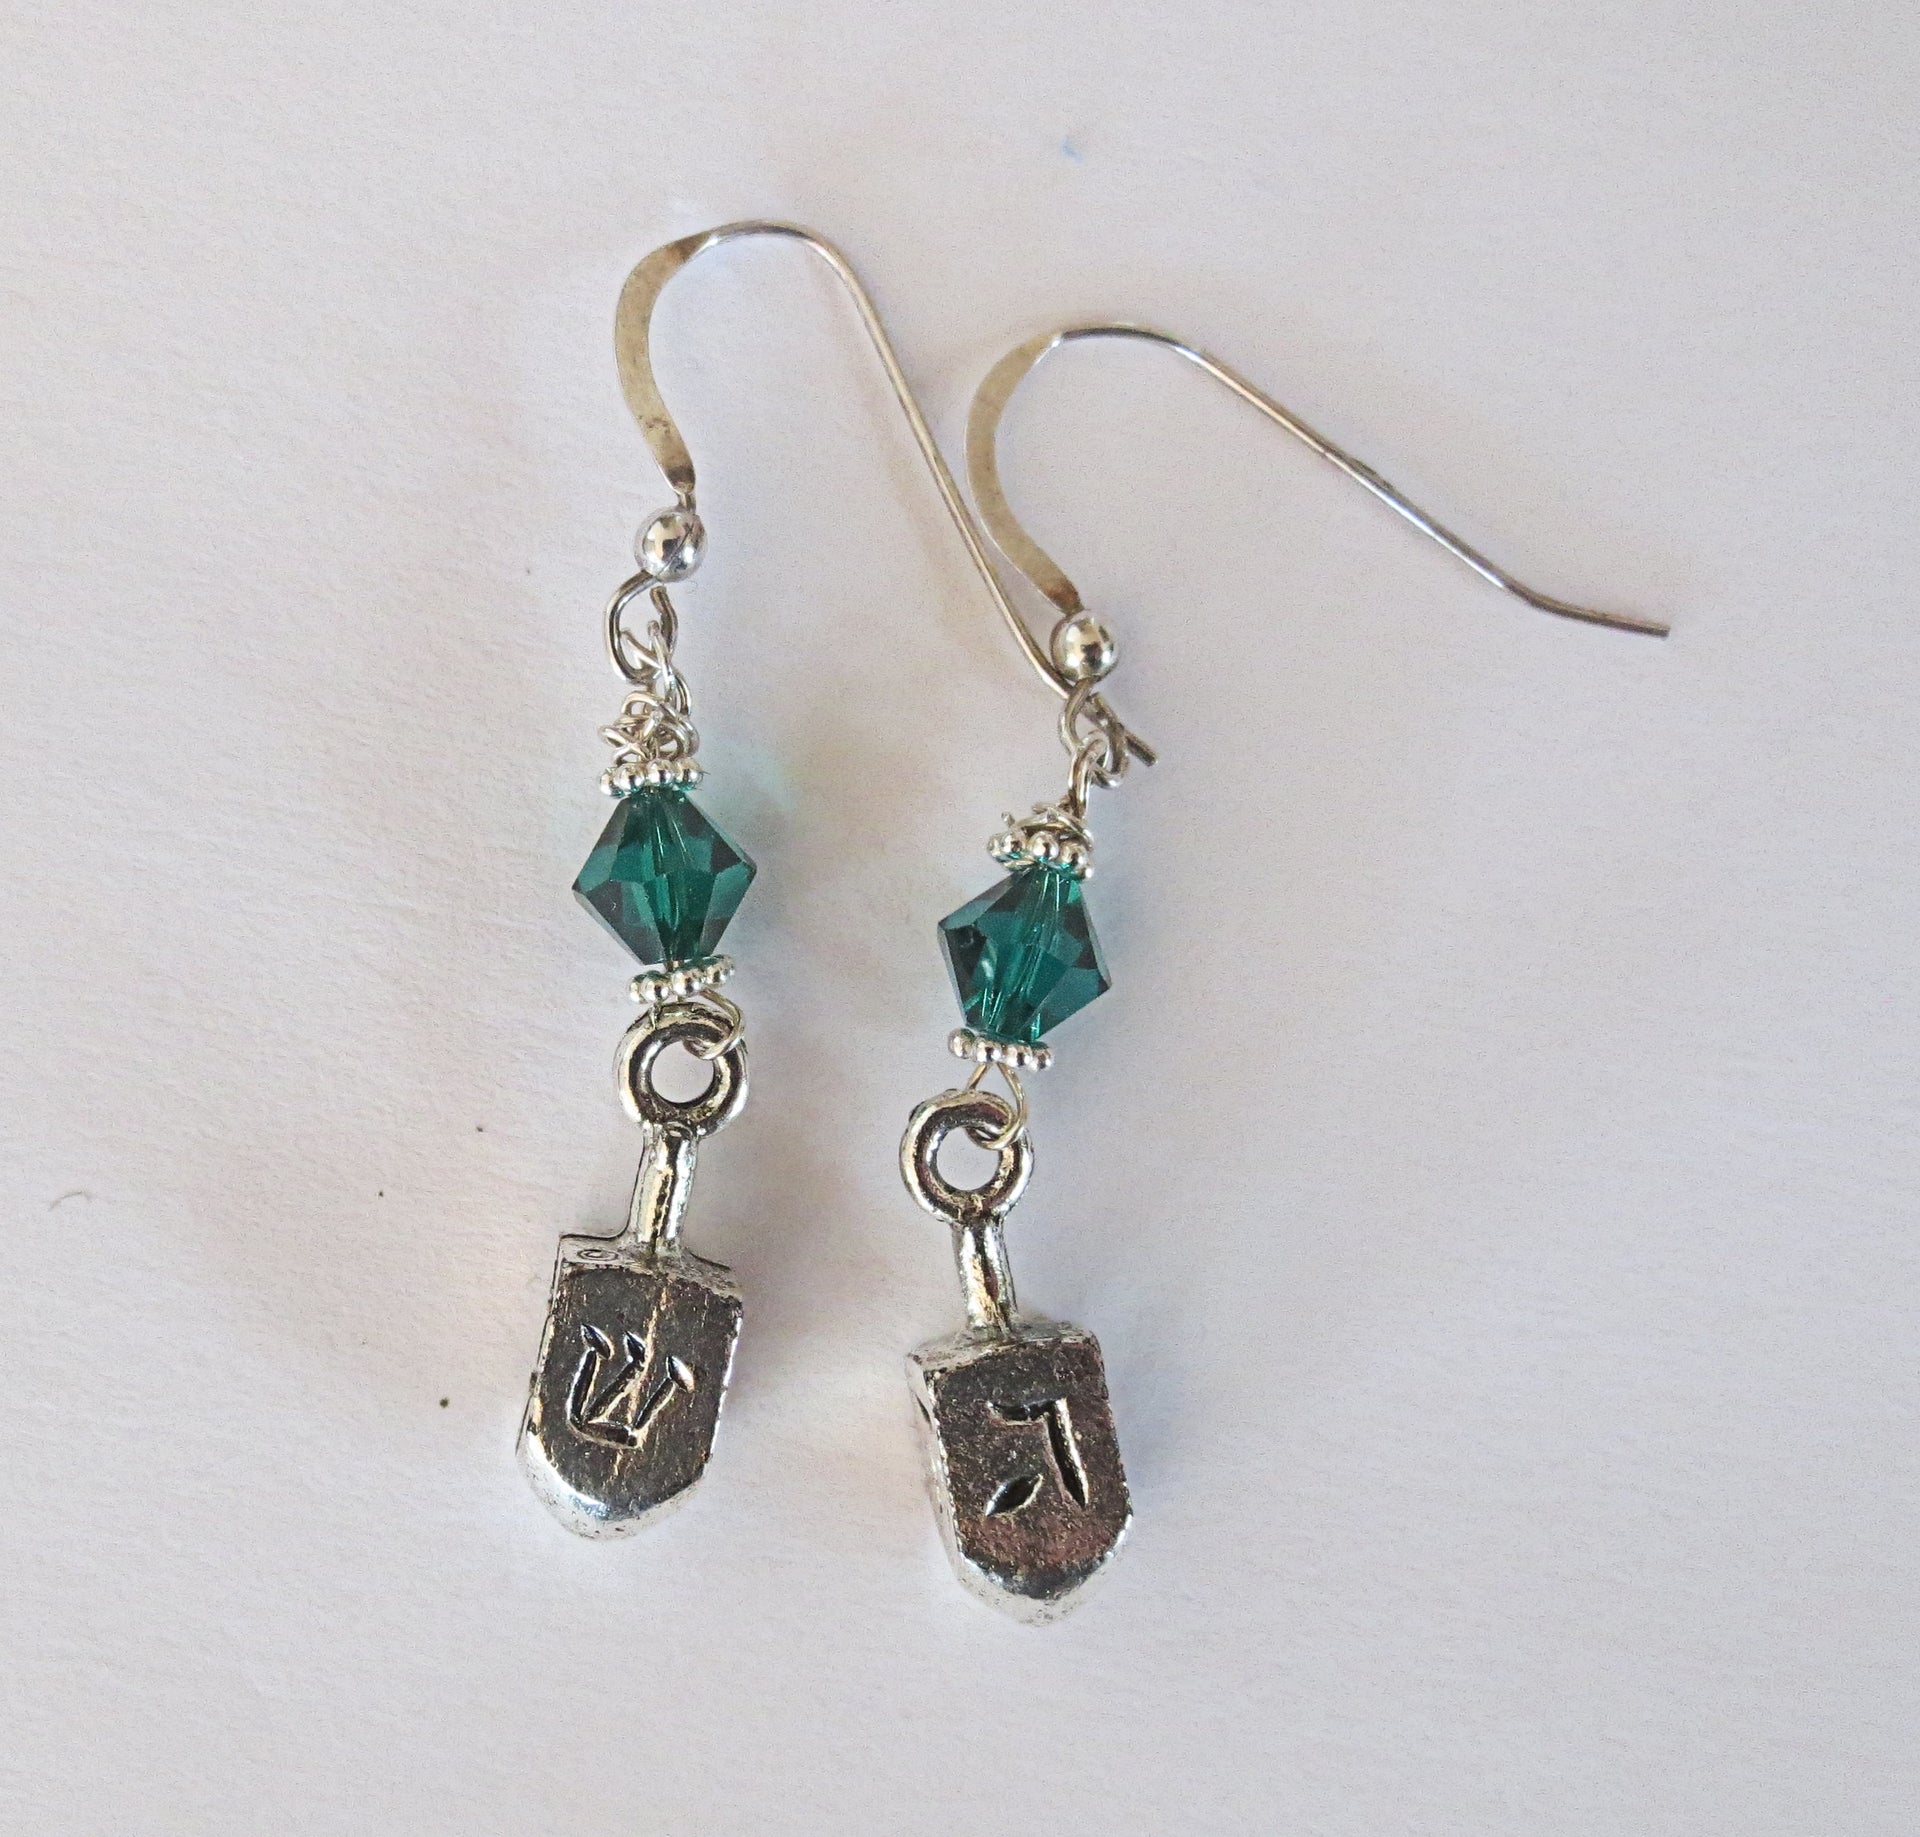 hanukkah or chanukah swarovski crystals silver earrings menorahs and dreidels sterling ear wires emerald bicones / dreidels / regular ear wires